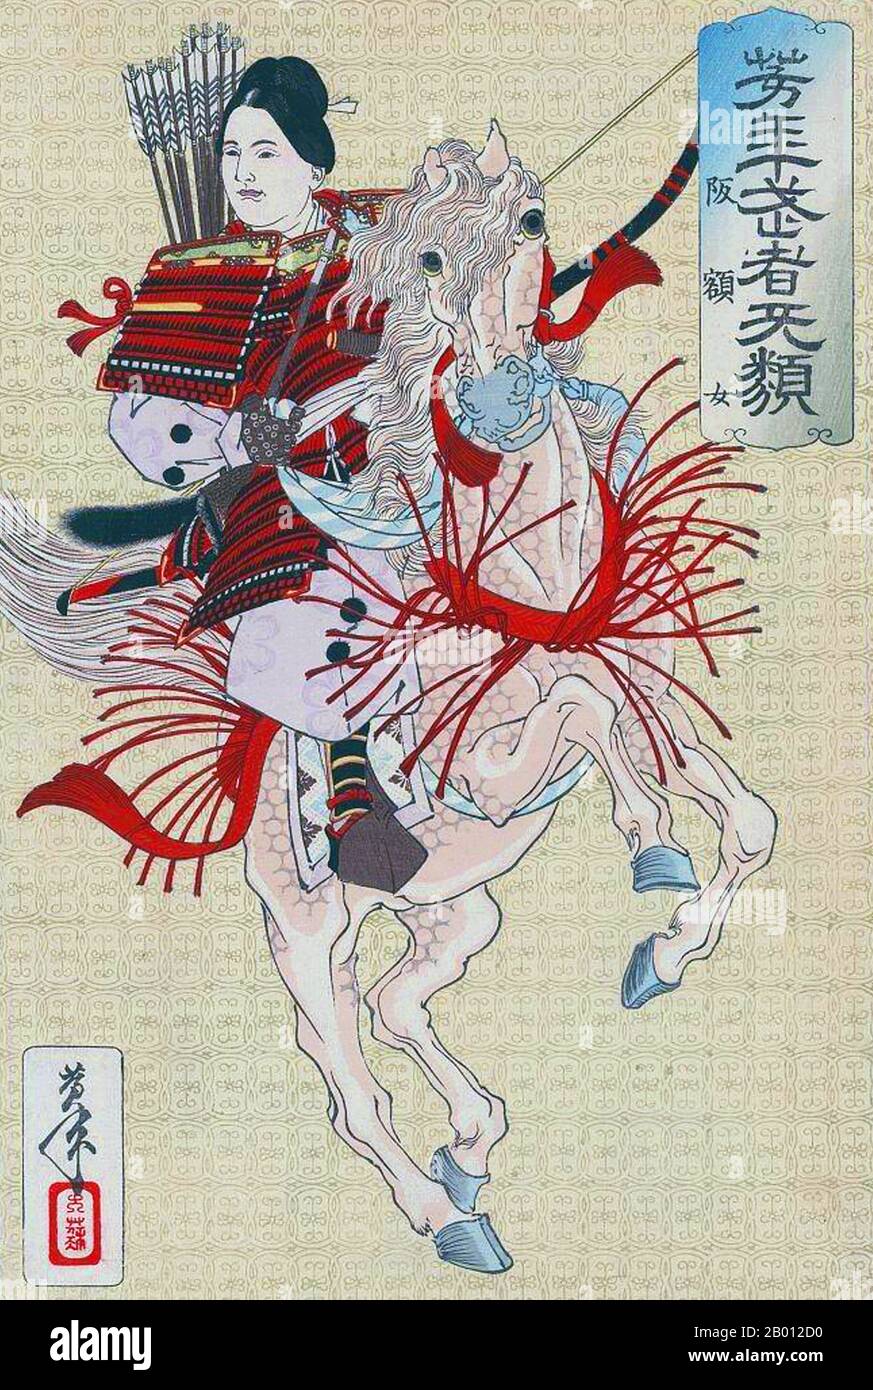 Japan: Lady Hangaku (Hangaku Gozen). Ukiyo-e Holzschnitt von Tsukioka Yoshitoshi (1839-1892), c. 1885. Hangaku Gozen war eine weibliche Kriegersamurai oder onna-bugeisha, eine der relativ wenigen japanischen Kriegerfrauen, die in der Geschichte oder klassischen Literatur allgemein bekannt sind. Sie lebte am Ende der Heian- und am Anfang der Kamakura-Periode. Tochter eines Kriegers namens Jo Sukekuni, war sie Schwester von Sukenaga und Sukemoto. Die Jo waren Krieger, Verbündete des Taira-Clans, in der Provinz Echigo (heutige Präfektur Niigata). Sie wurden in den Genpei-Kriegen besiegt und verloren einen Großteil ihrer Macht. Stockfoto